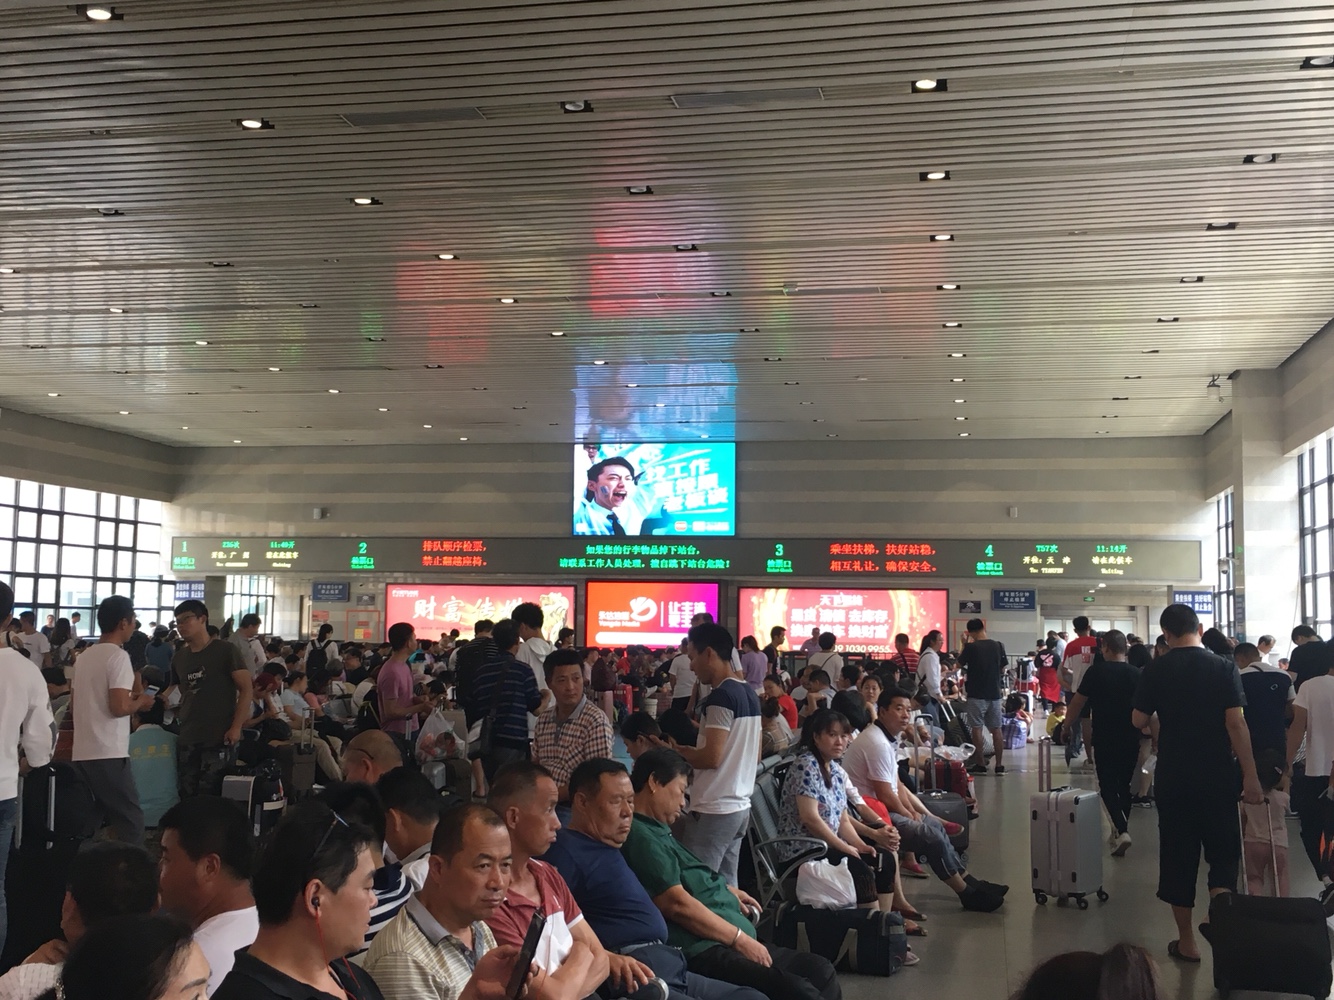 北京西站的自助验证机极其好使,放入身份证与车票后几乎瞬间验证完成.